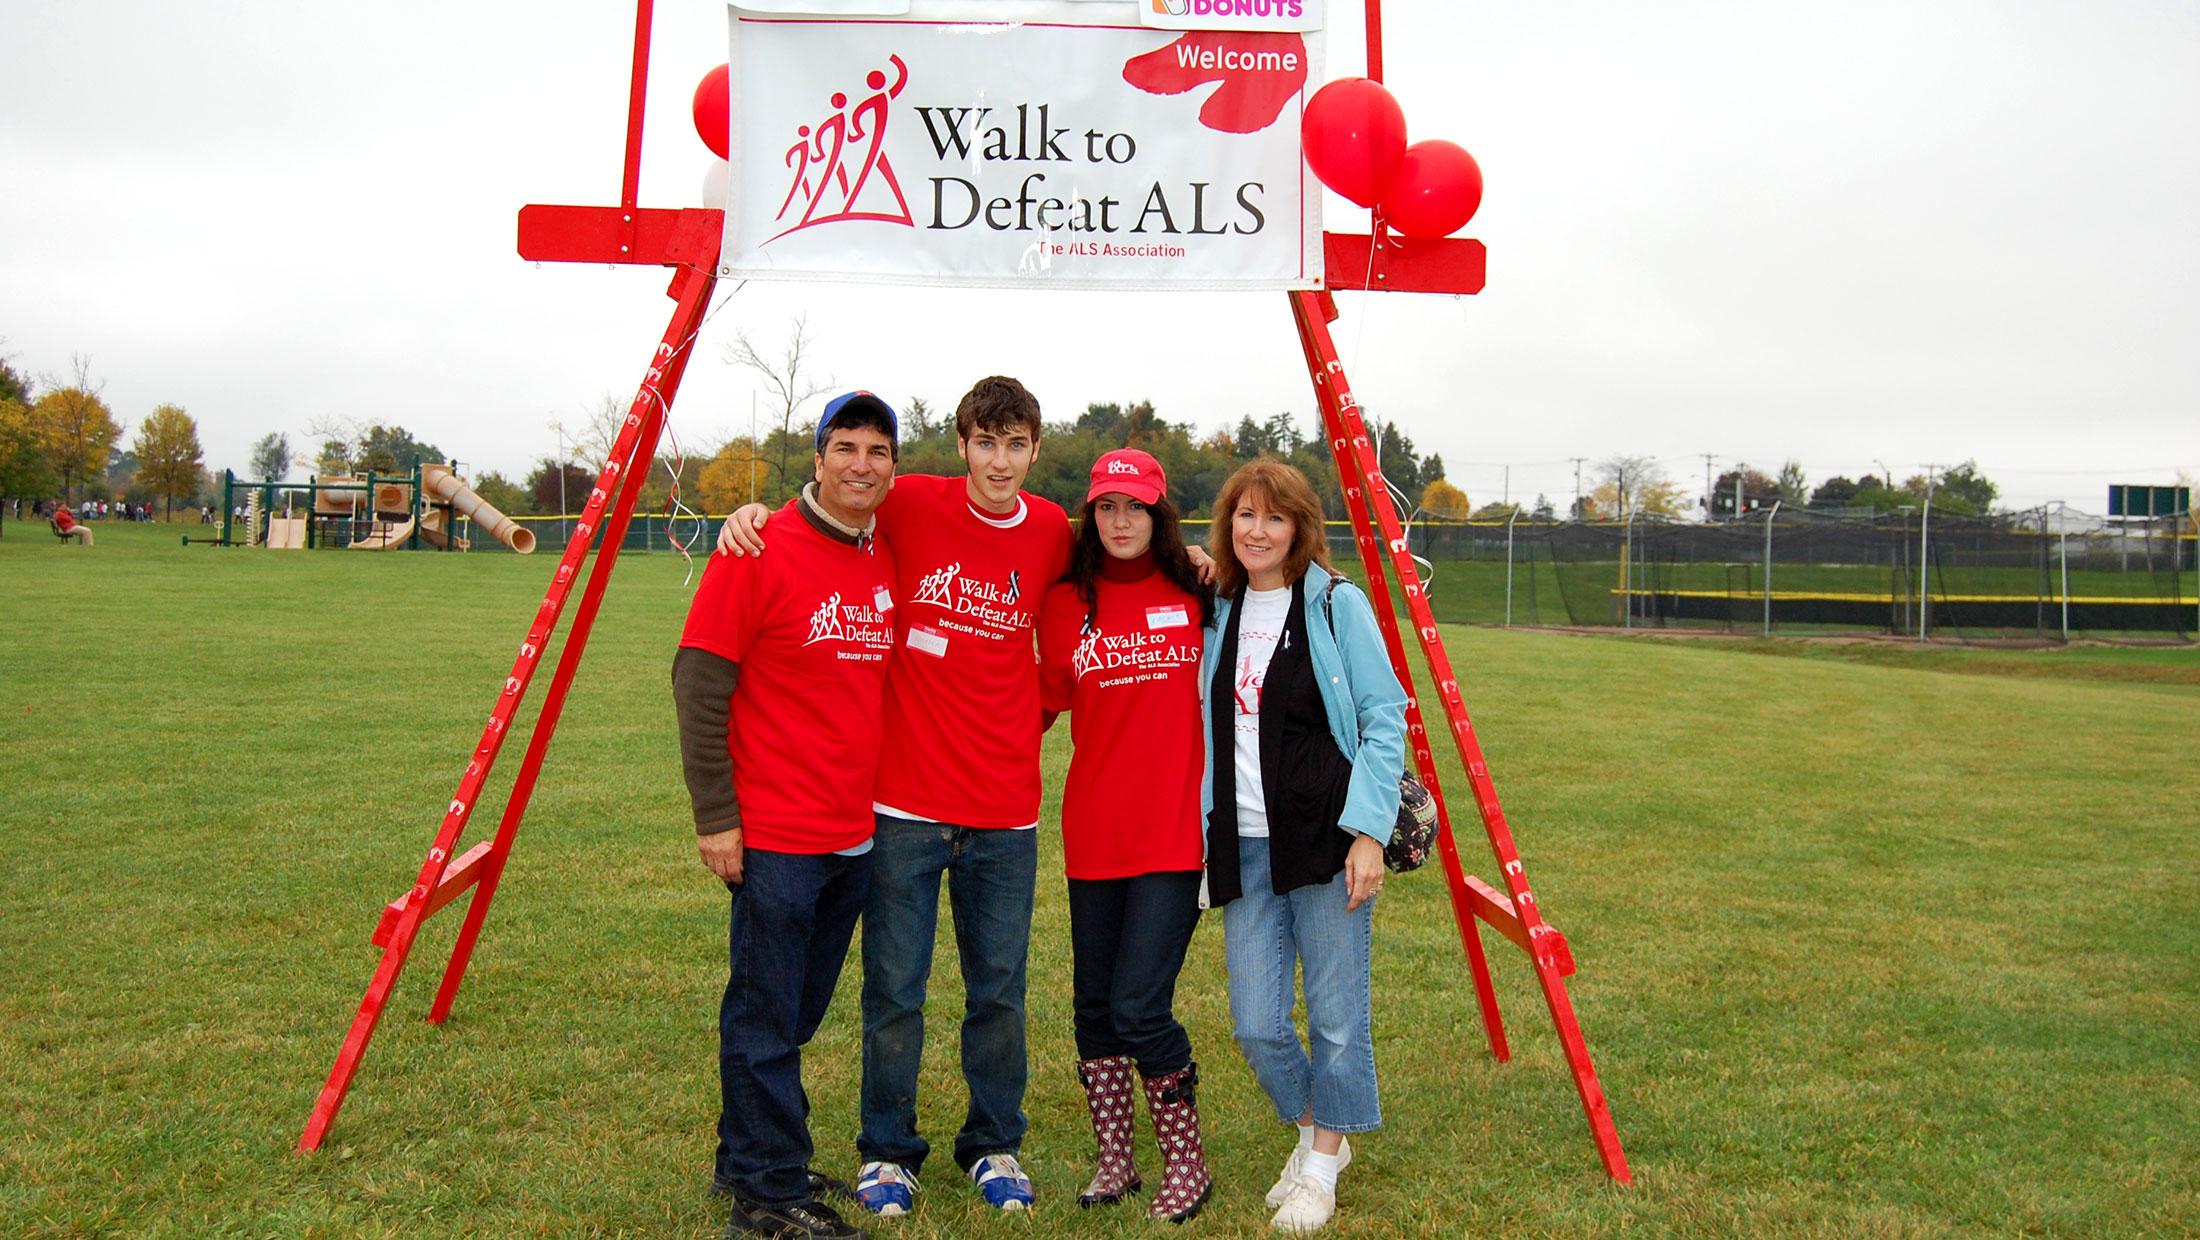 Jackie Heltz: My Journey as an ALS Volunteer